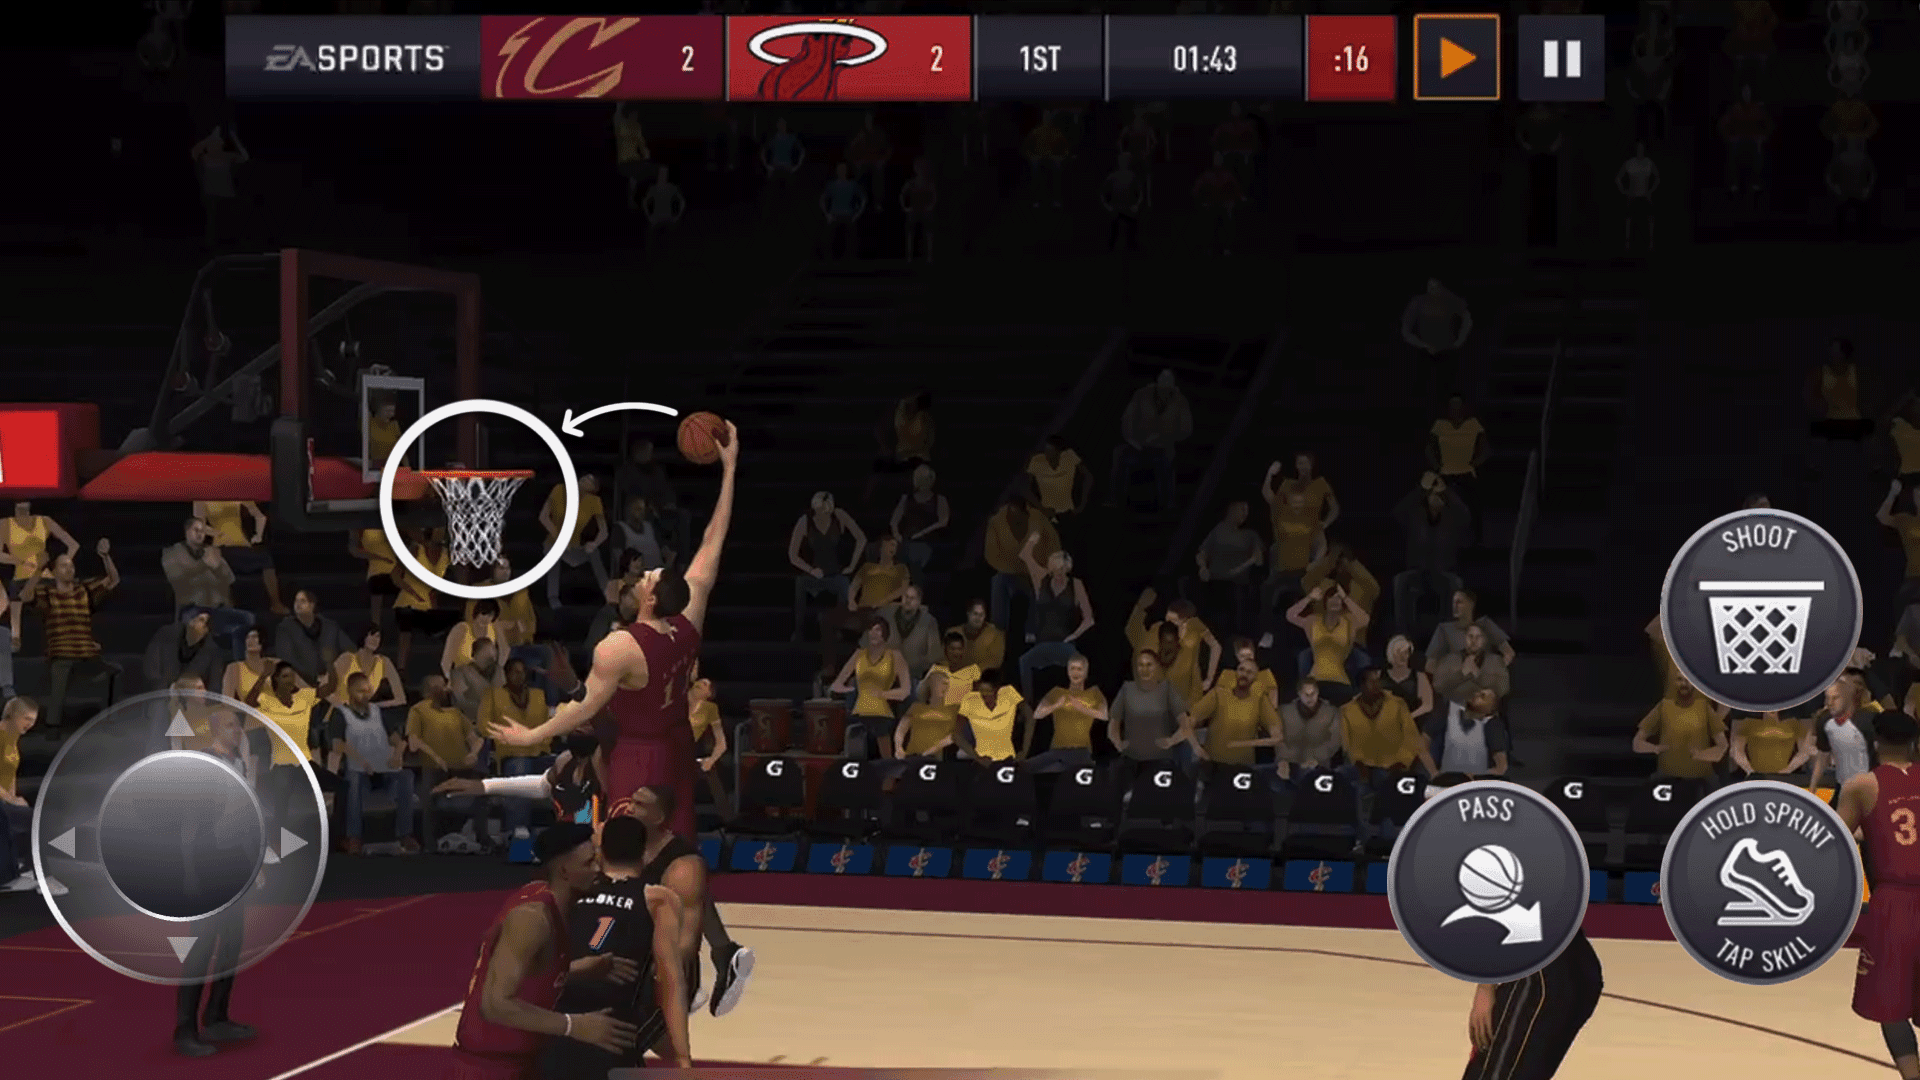 Screenshot of NBA LIVE Mobile Basketball